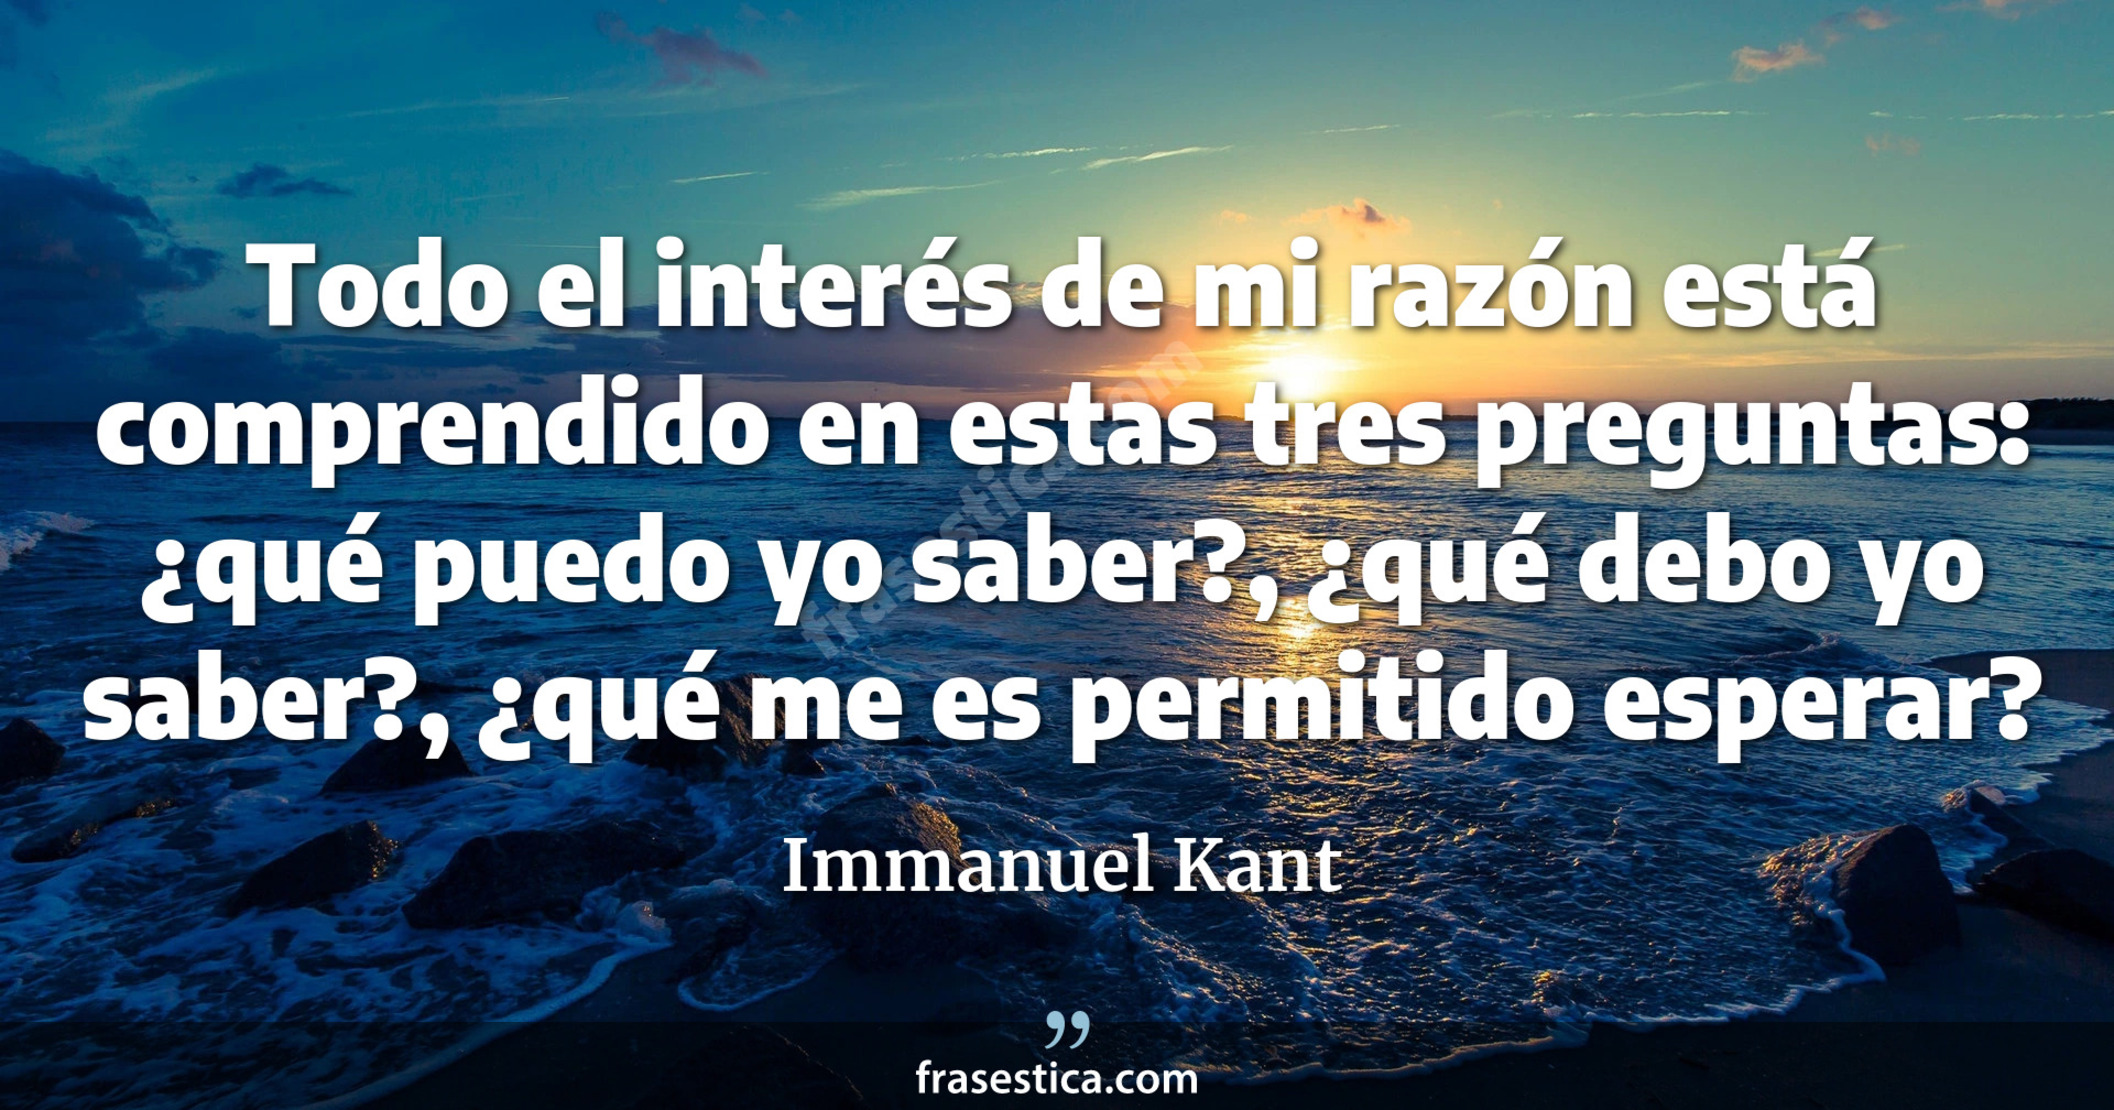 Todo el interés de mi razón está comprendido en estas tres preguntas: ¿qué puedo yo saber?, ¿qué debo yo saber?, ¿qué me es permitido esperar? - Immanuel Kant